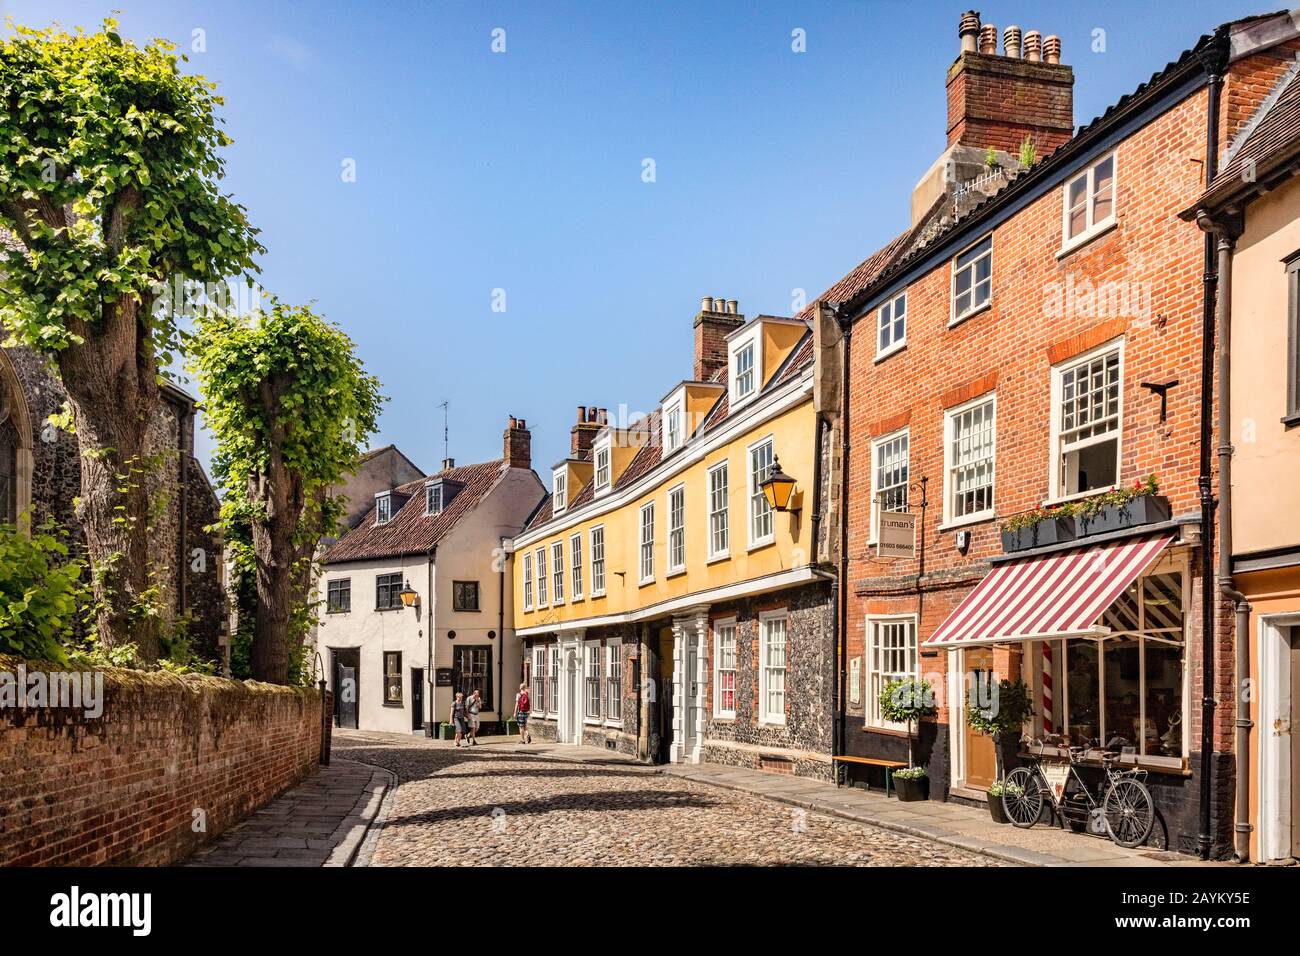 29. Juni 2019: Norwich, Norfolk - Elm Hill ist eine historische gepflasterte Straße im Zentrum von Norwich, Norfolk, mit vielen alten und interessanten Gebäuden... Stockfoto